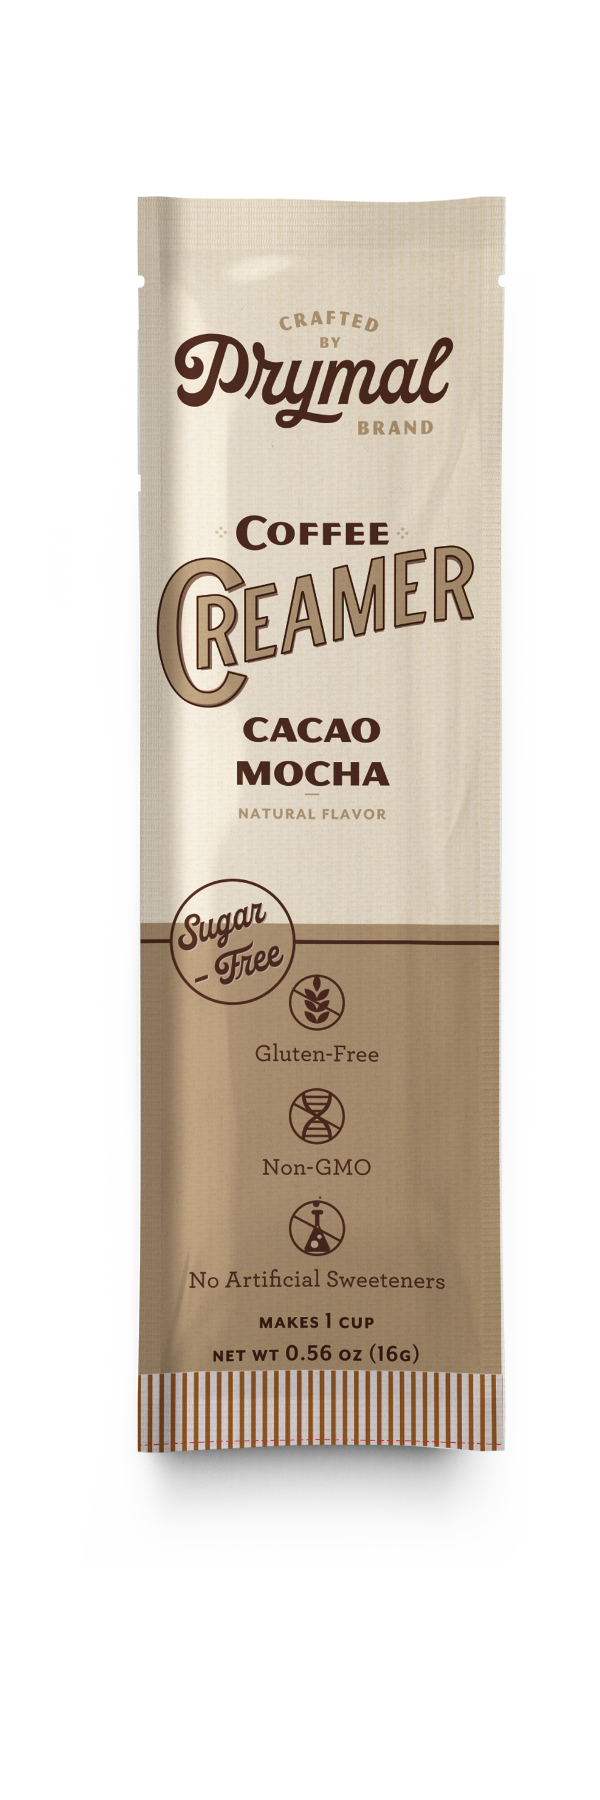 Cacao Mocha